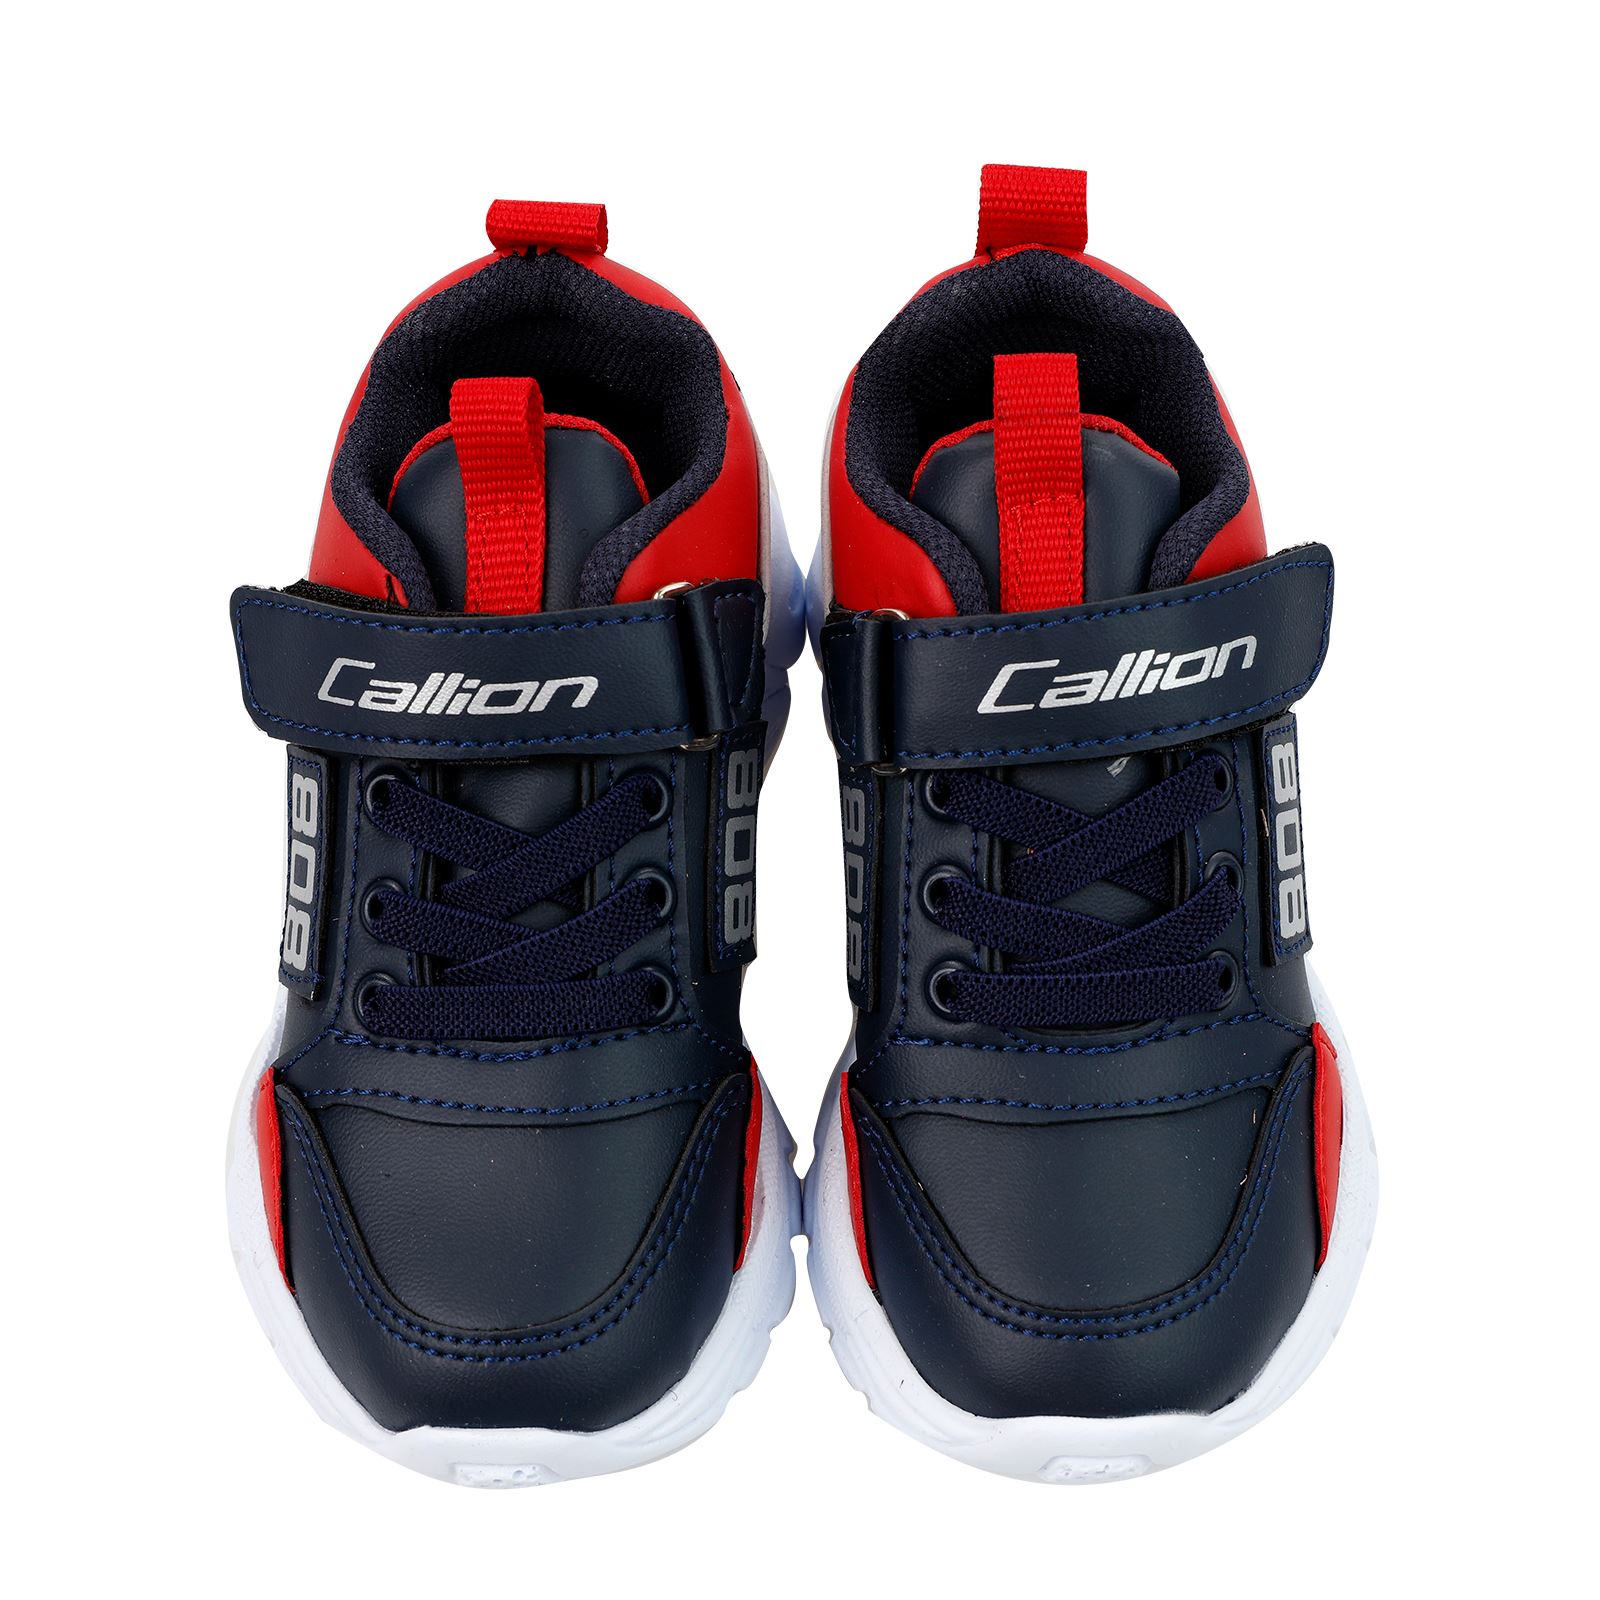 Callion Erkek Çocuk Spor Ayakkabı 31-35 Numara Lacivert-Kırmızı